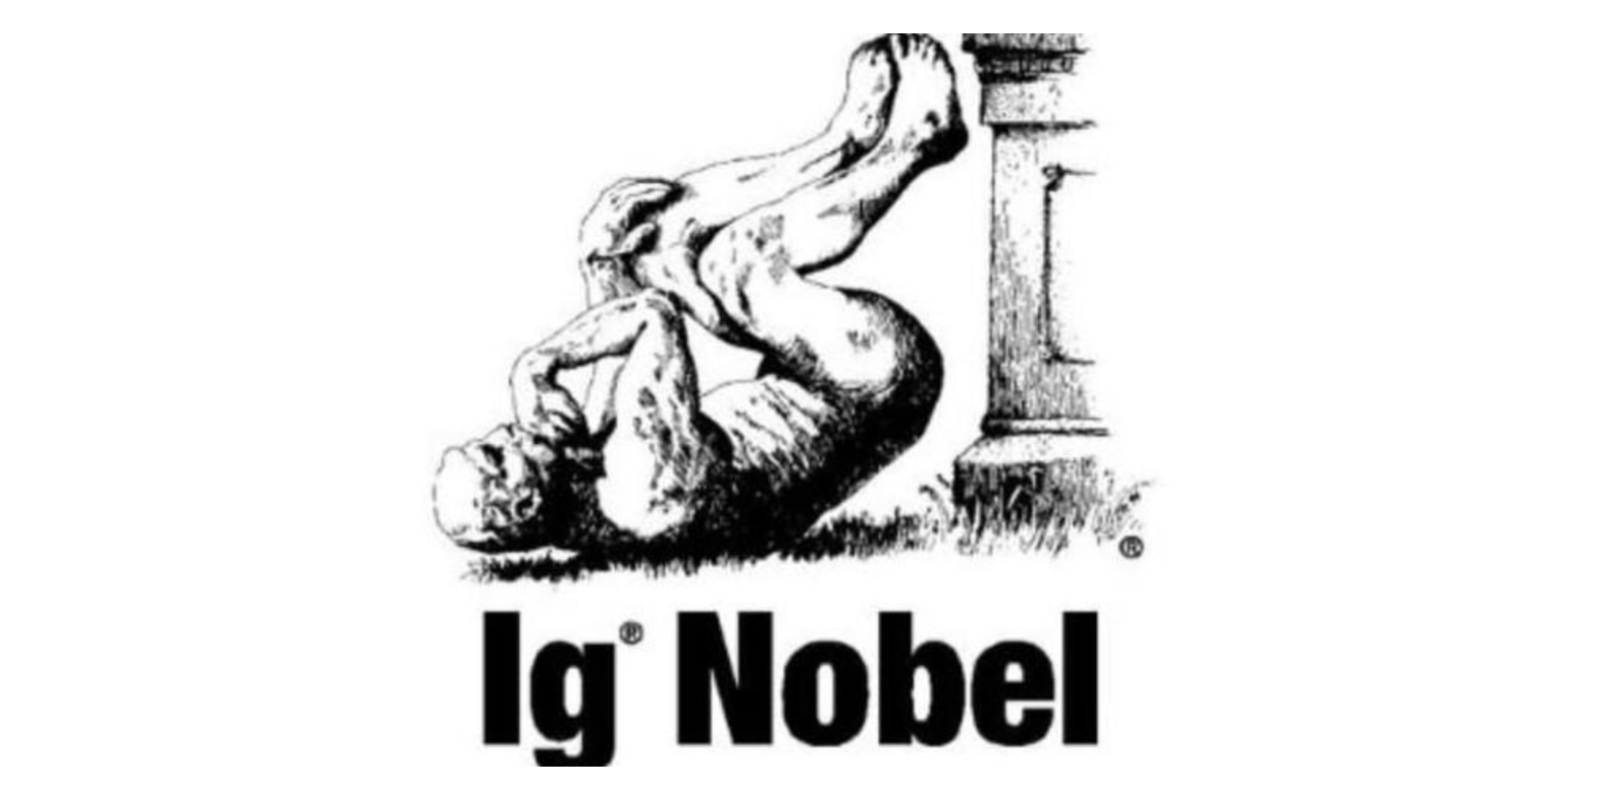 IgNobel, o prêmio da curiosidade raiz